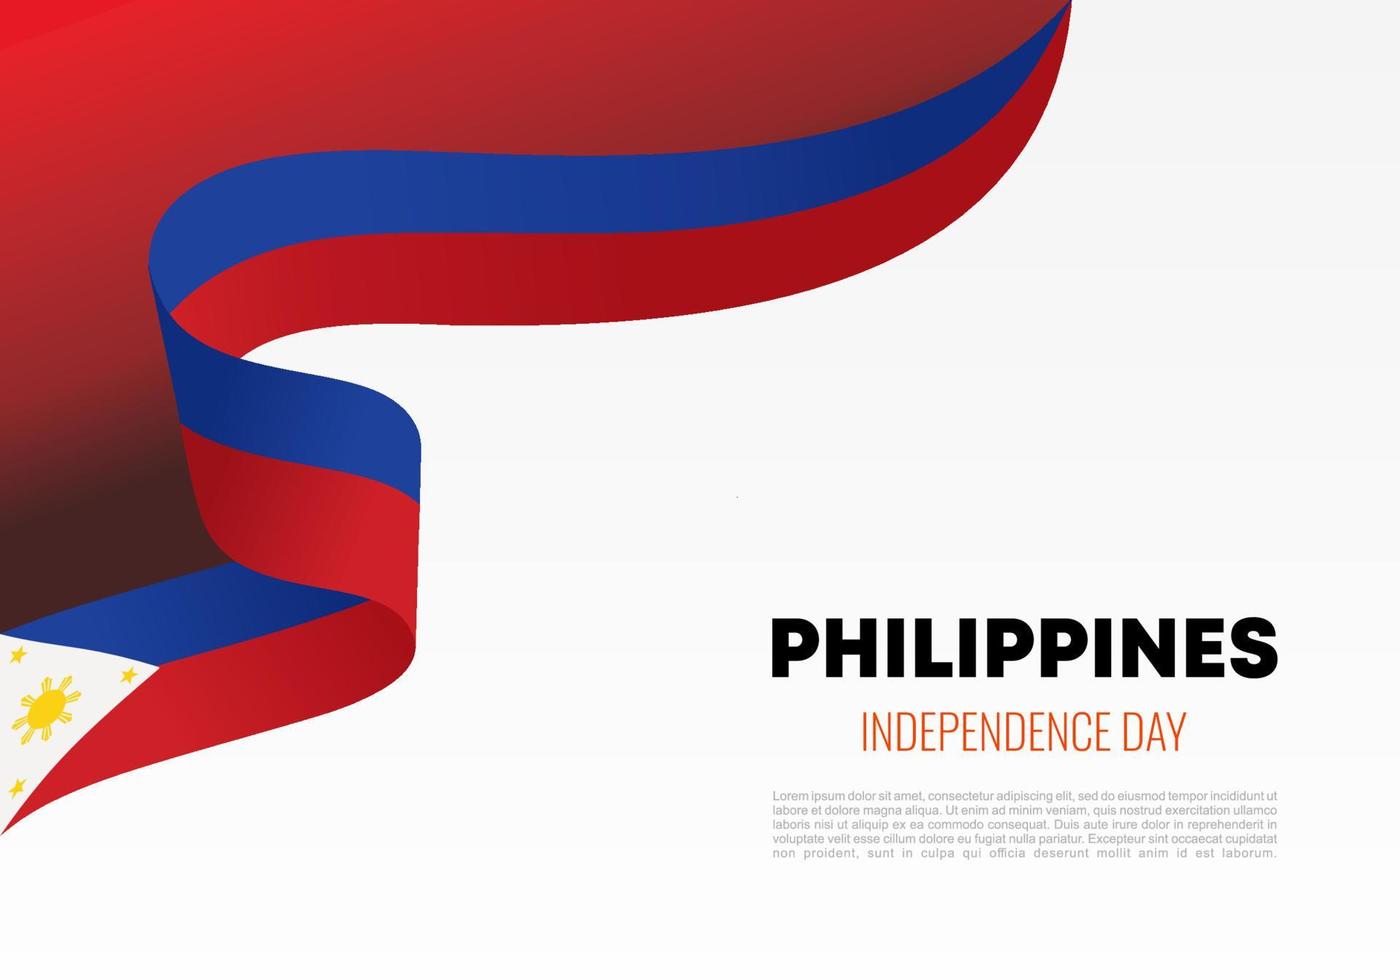 fondo del día de la independencia de filipinas para la celebración nacional vector